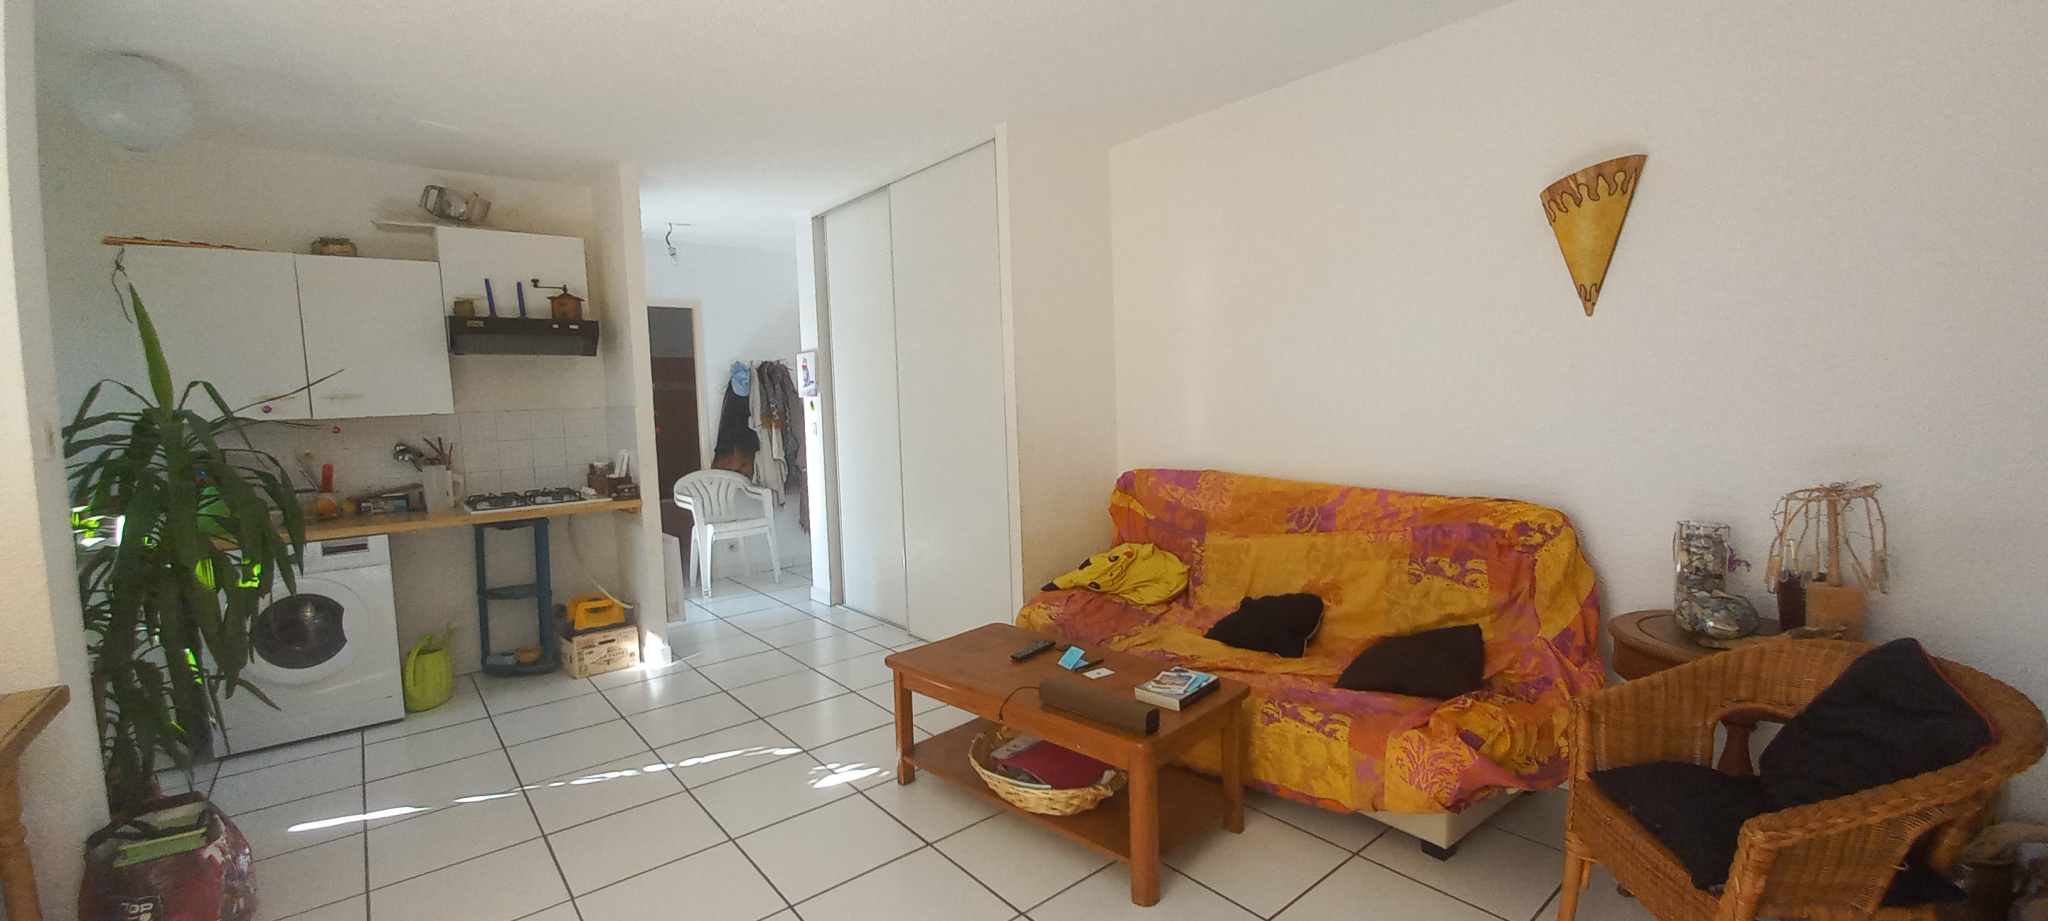 À vendre appartement de 45m2 à argelès-sur-mer (66700) - Photo 5'